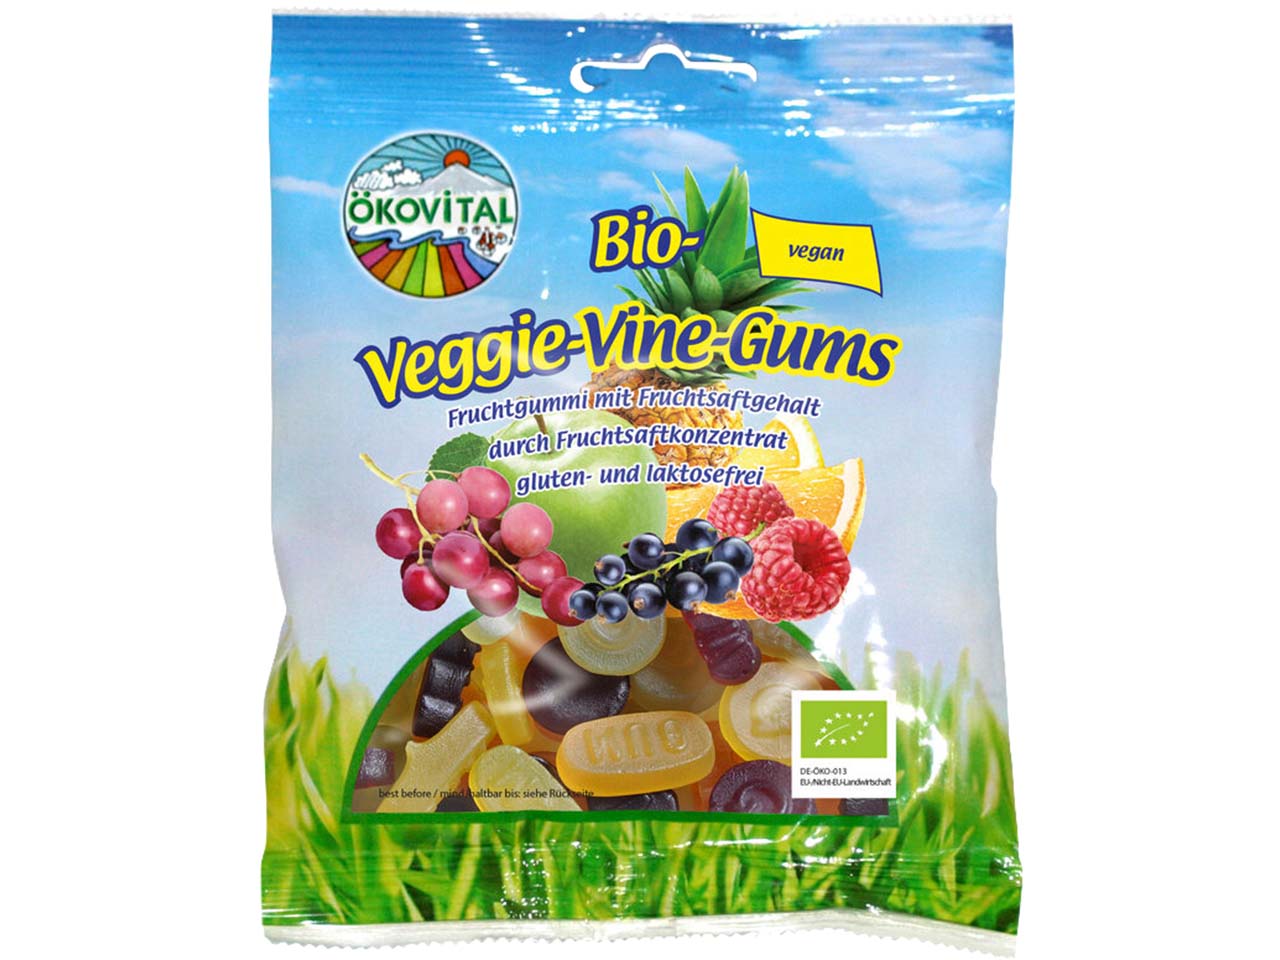 ÖKOVITAL Vegane Bio-Fruchtgummi "Veggie-Vine-Gums